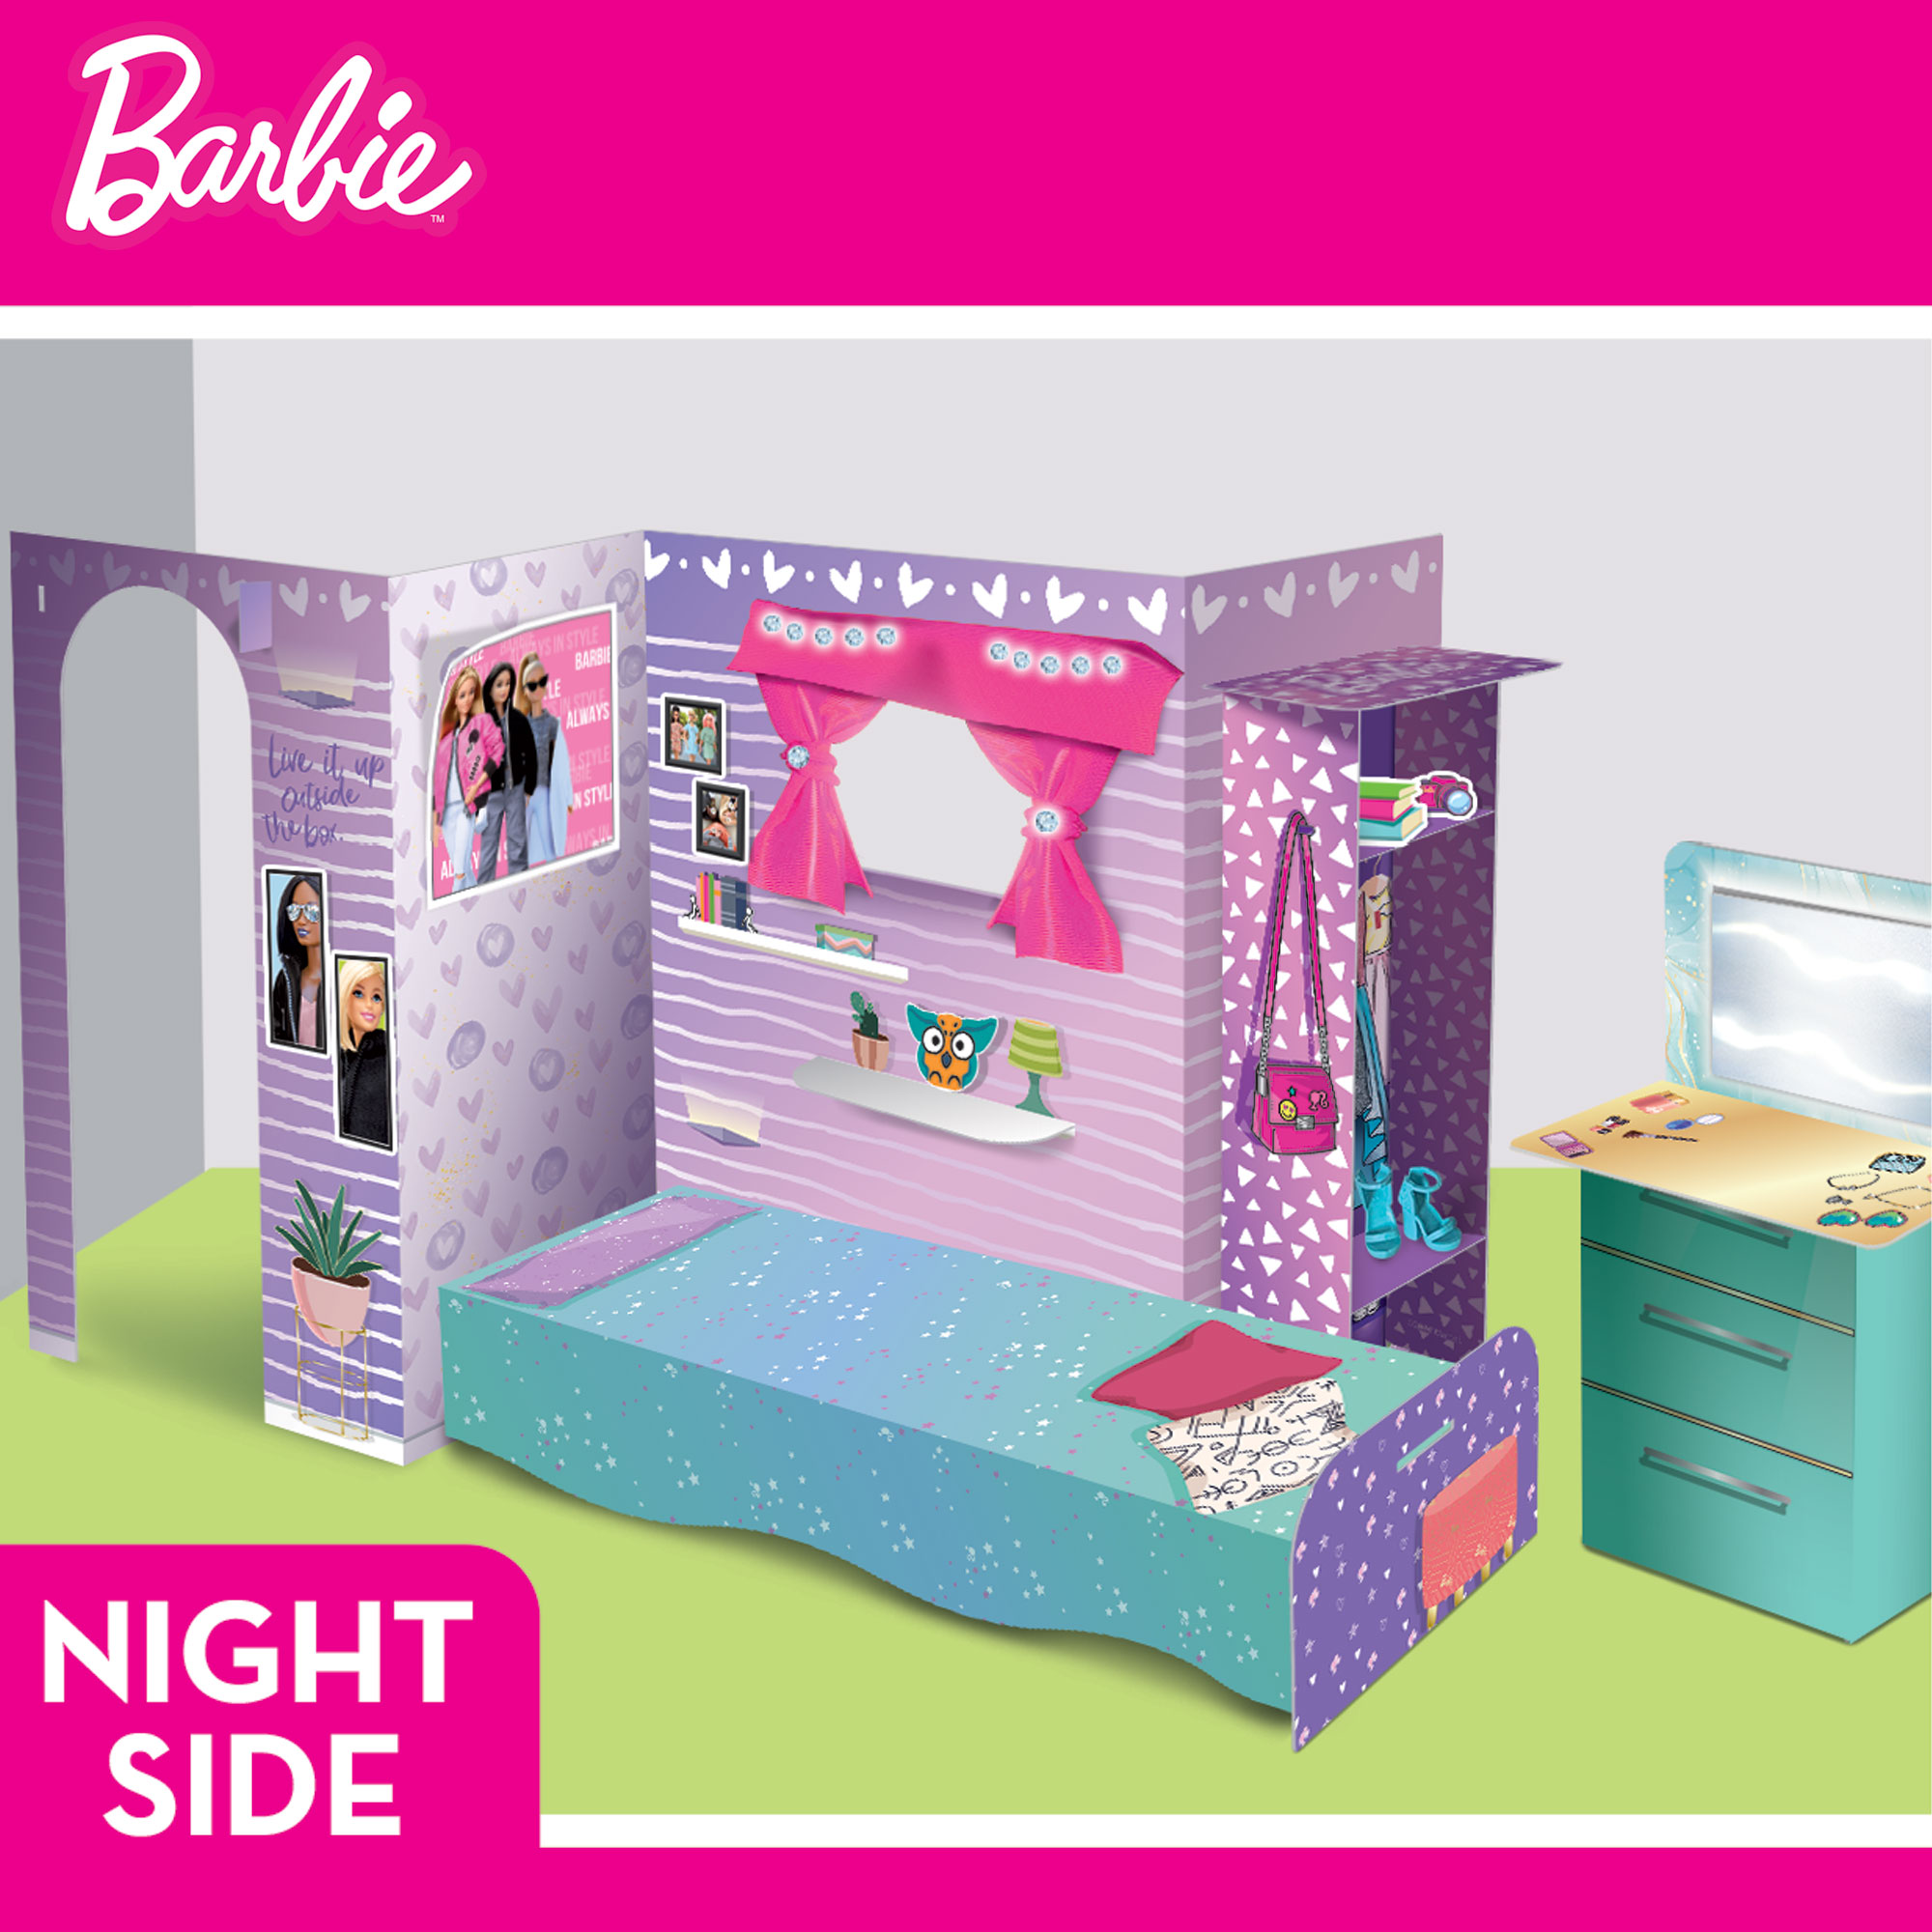 mit Barbie Barbie Puppe, von Loft Lernspiele, Lisciani mehrfarbig BARBIE Spielset Barbie